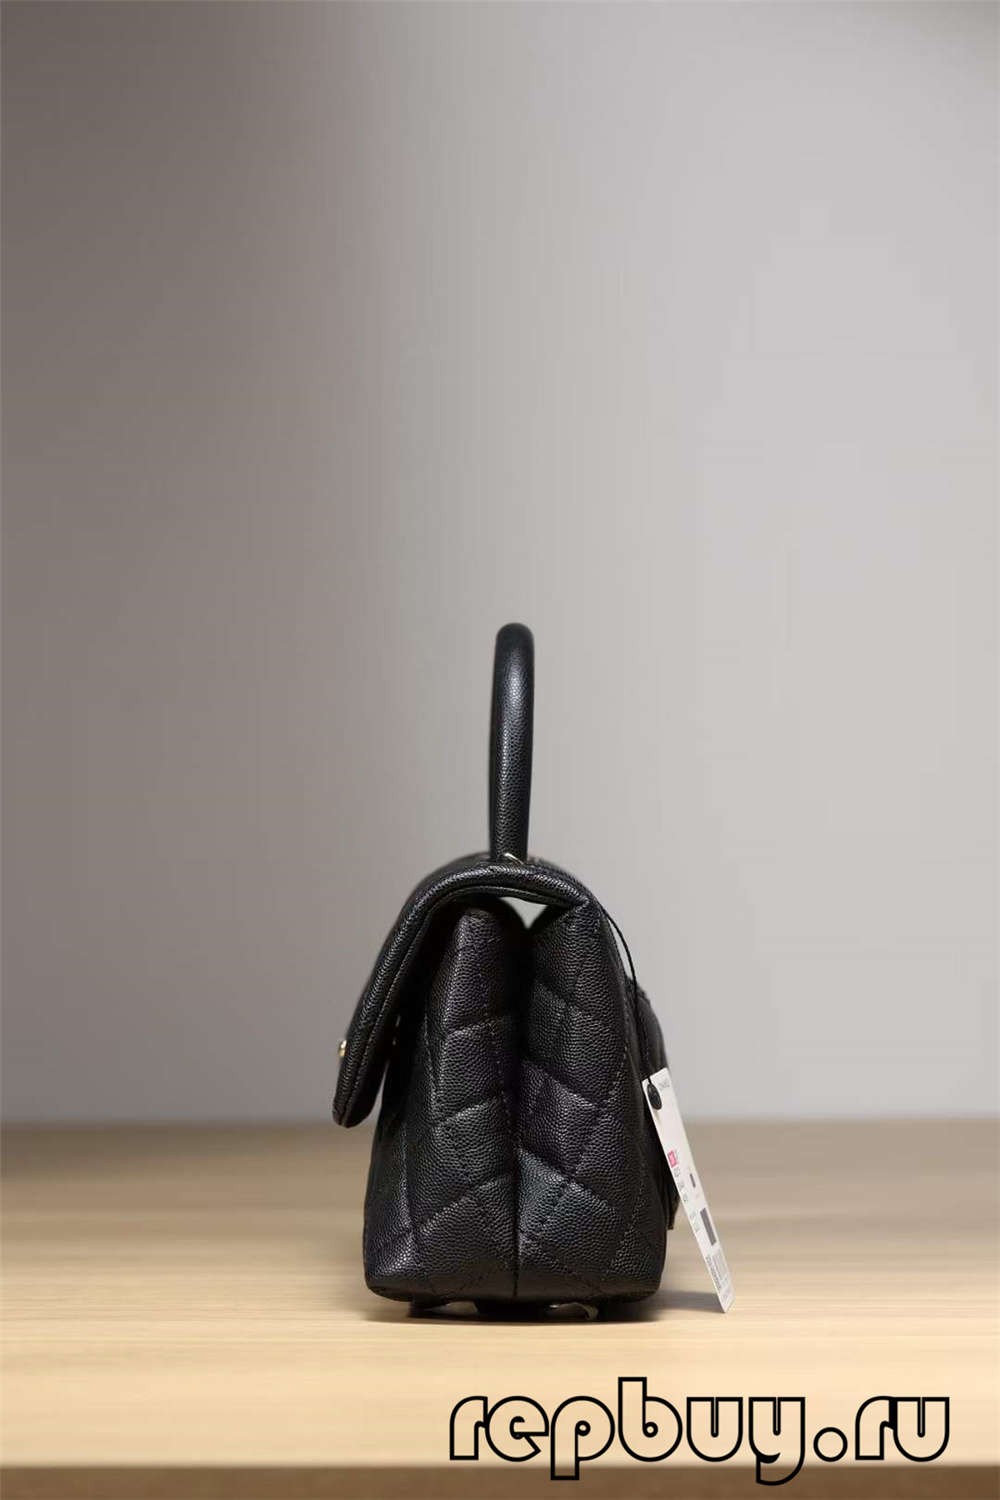 Chanel Coco Handle Top Replica Handbag Black Gold Buckle Look (2022 Updated)-Kedai Dalam Talian Beg Louis Vuitton Palsu Kualiti Terbaik, Beg berjenama replika ru